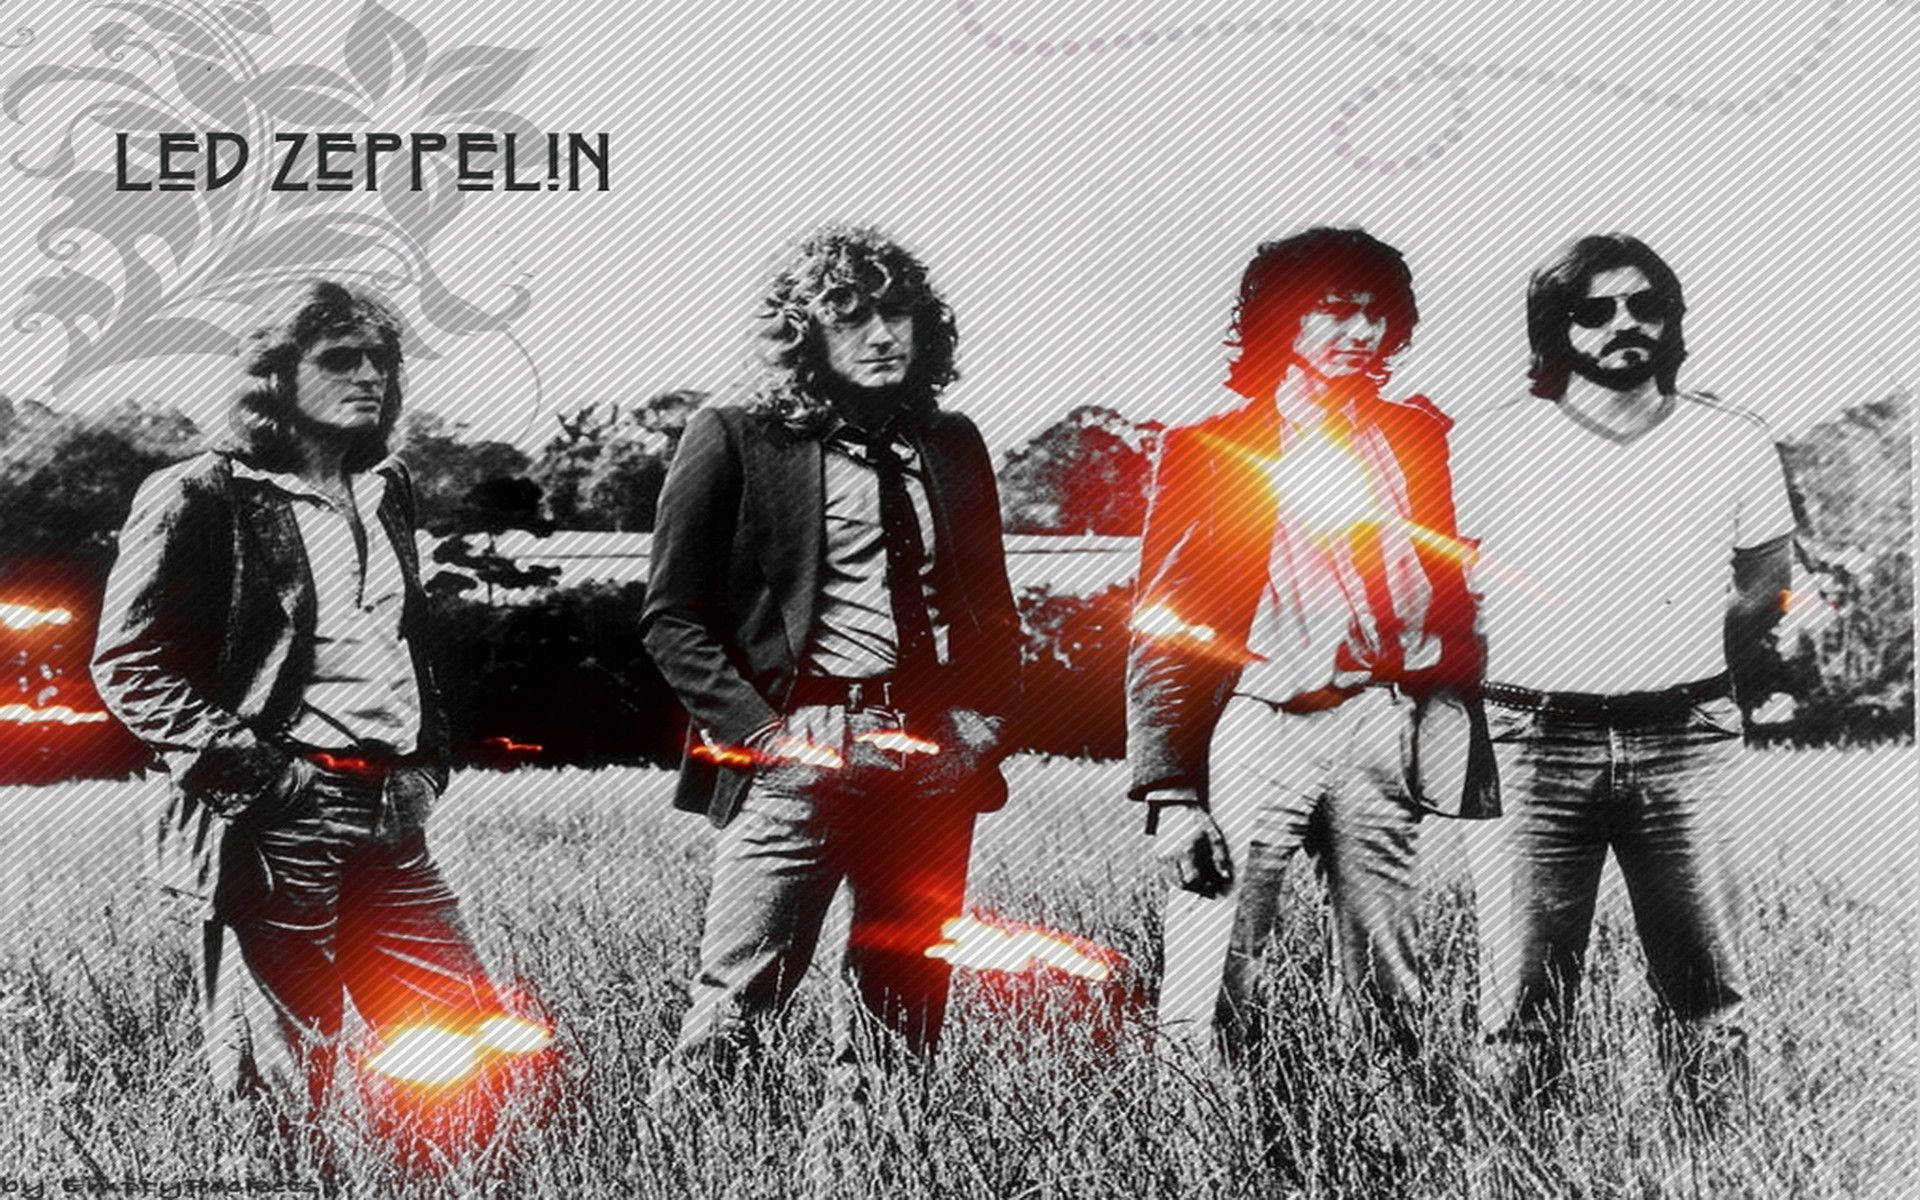 Led Zeppelin On The Grass Wallpaper